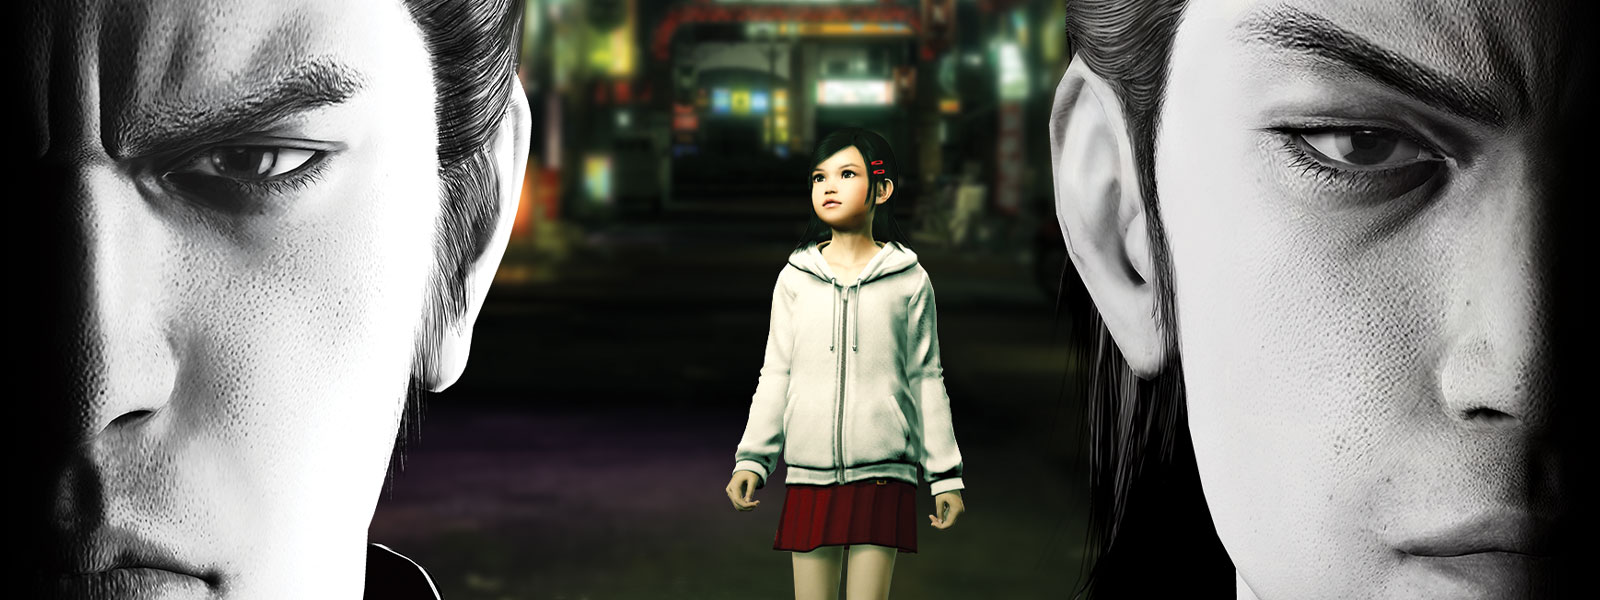 Два персонажа Yakuza пристально смотрят вперед на фоне изображения маленькой девочки в городе.